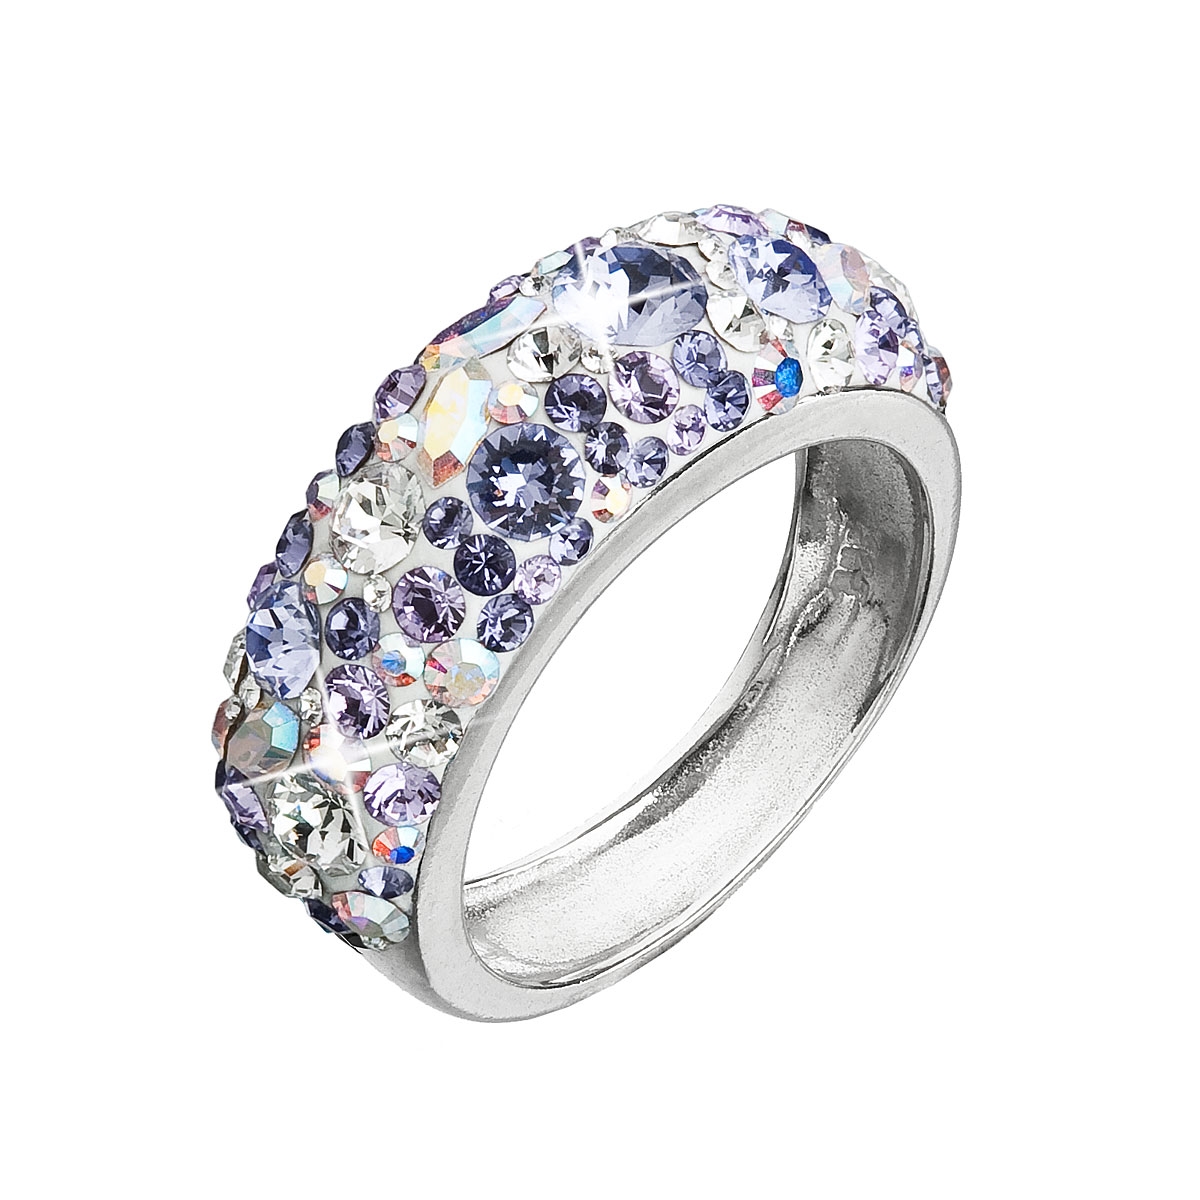 Strieborný prsteň s kryštálmi Crystals from Swarovski ®, Violet